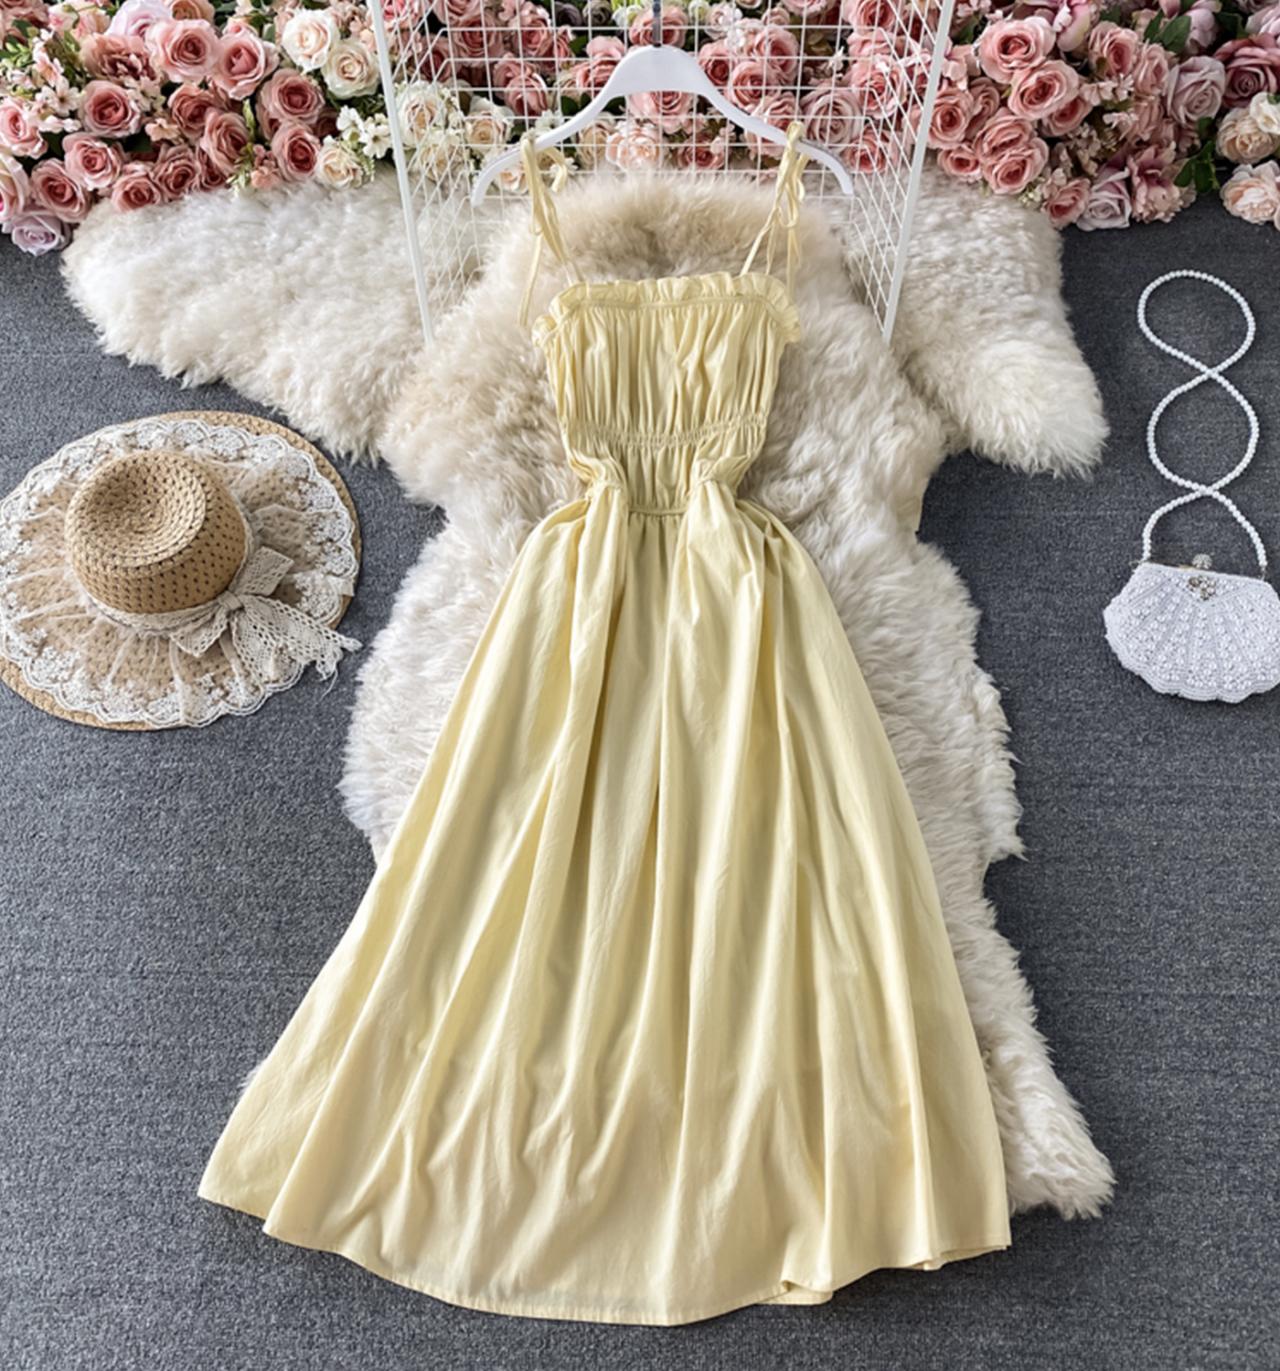 Süßes kurzes Kleid in A-Linie, modisches Kleid 700